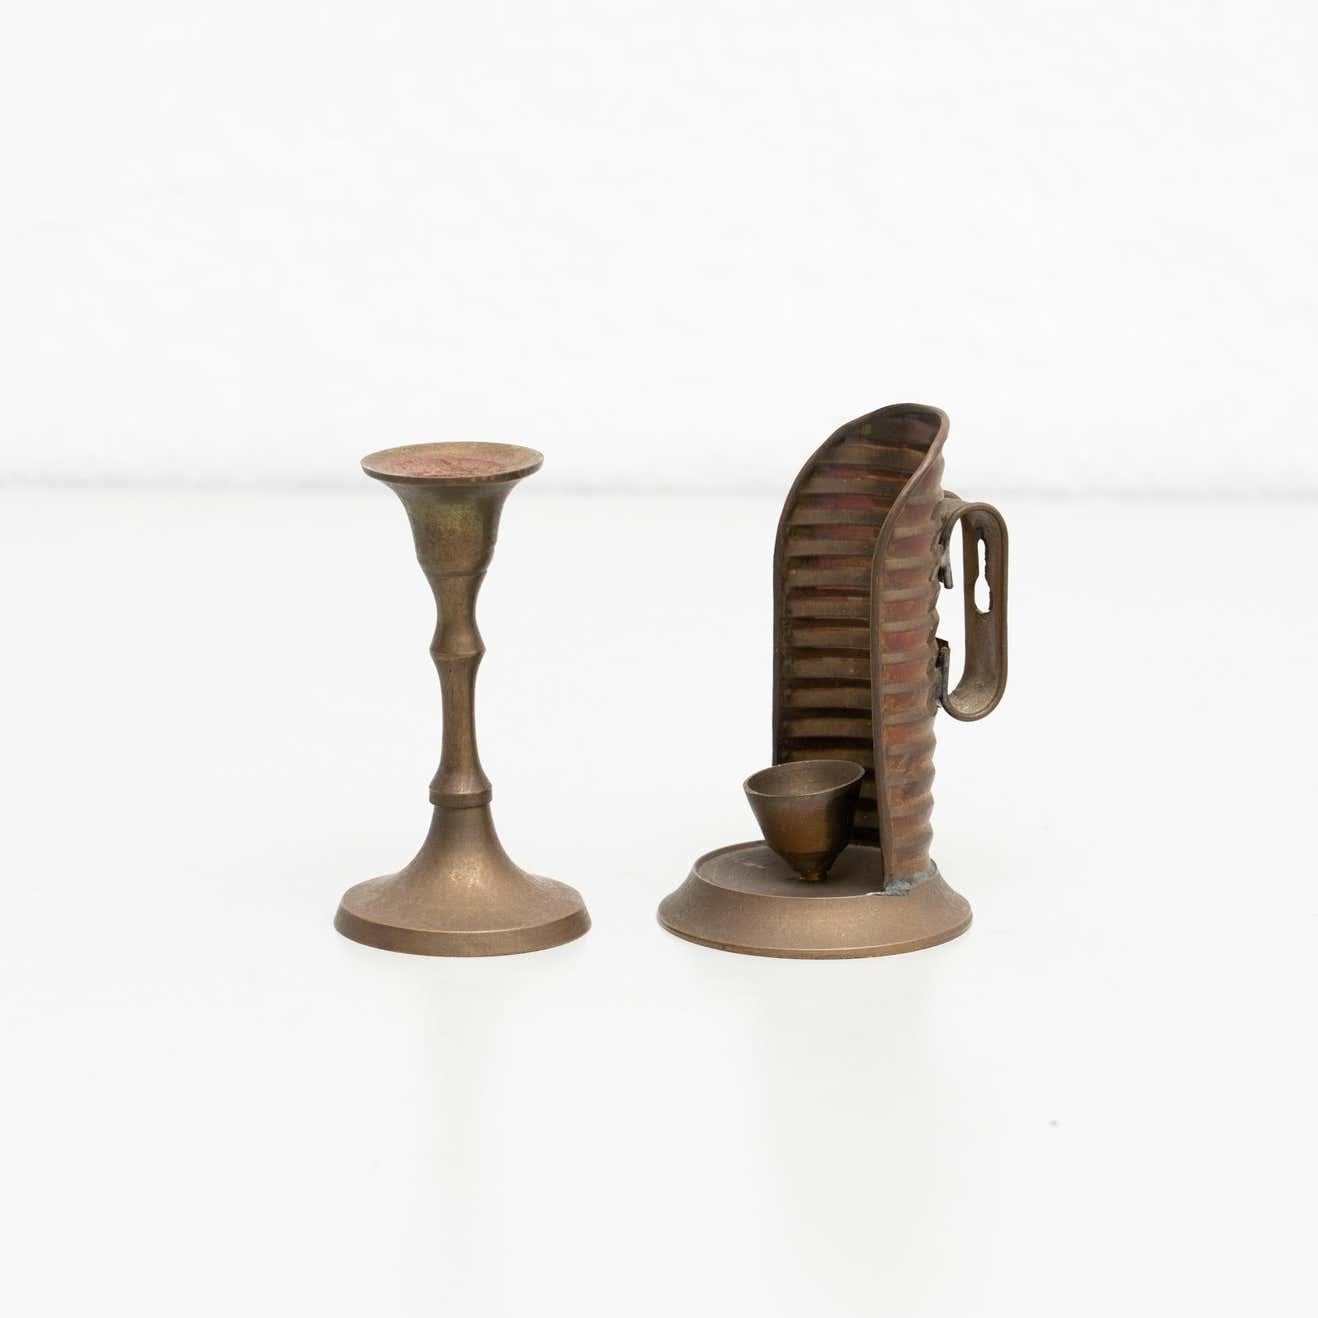 Satz von zwei rustikalen Kerzenhaltern aus Messing, um 1950
Von unbekanntem Hersteller, hergestellt in Spanien

Originaler Zustand mit geringen alters- und gebrauchsbedingten Abnutzungserscheinungen, der eine schöne Patina